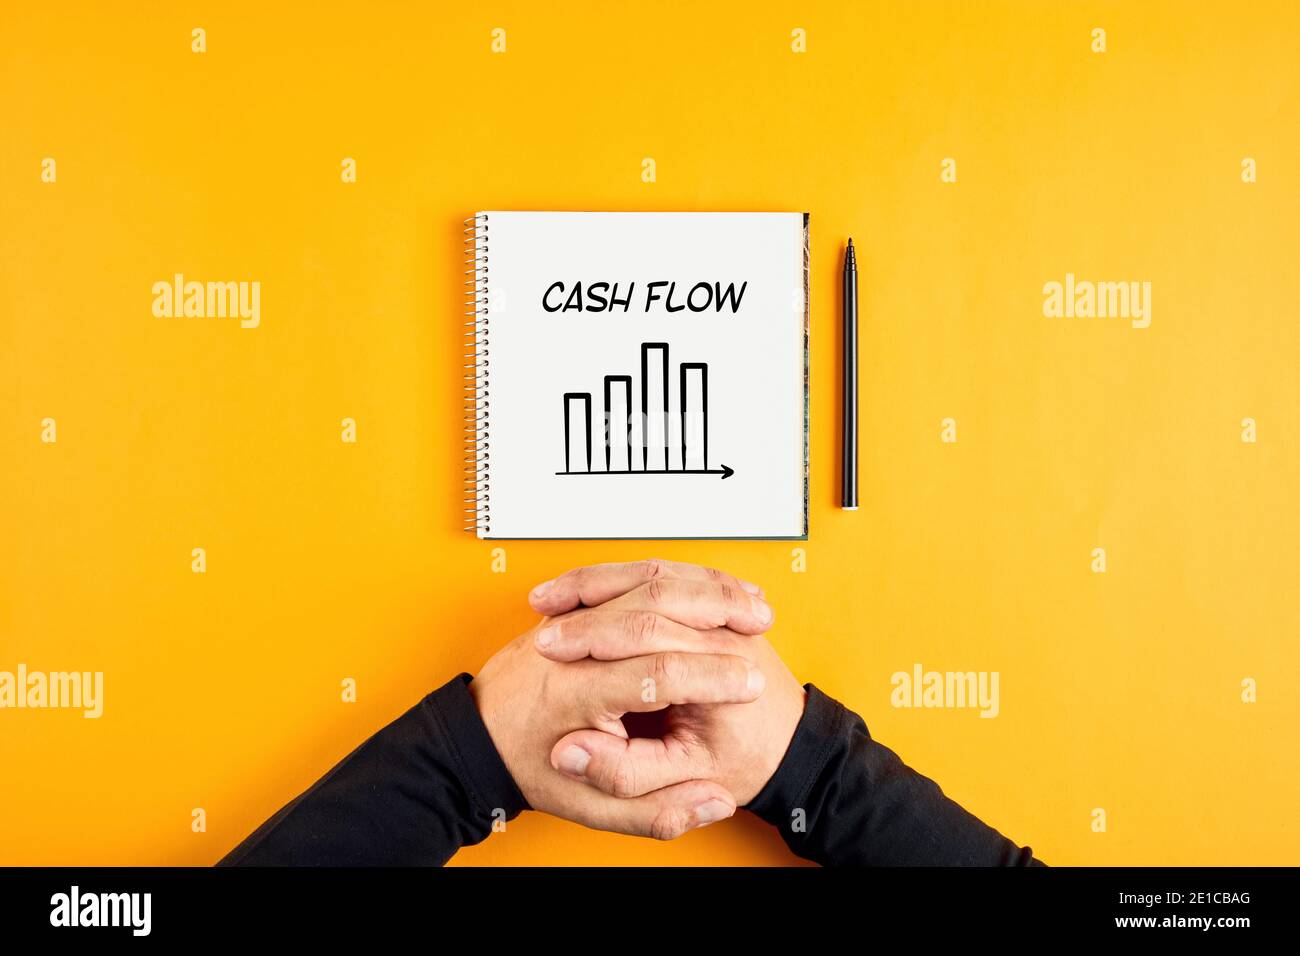 Hände eines Geschäftsmannes und ein Notizbuch mit dem Wort Cash Flow und einem Chart darauf geschrieben. Konzept der Corporate Cashflow-Analyse. Stockfoto